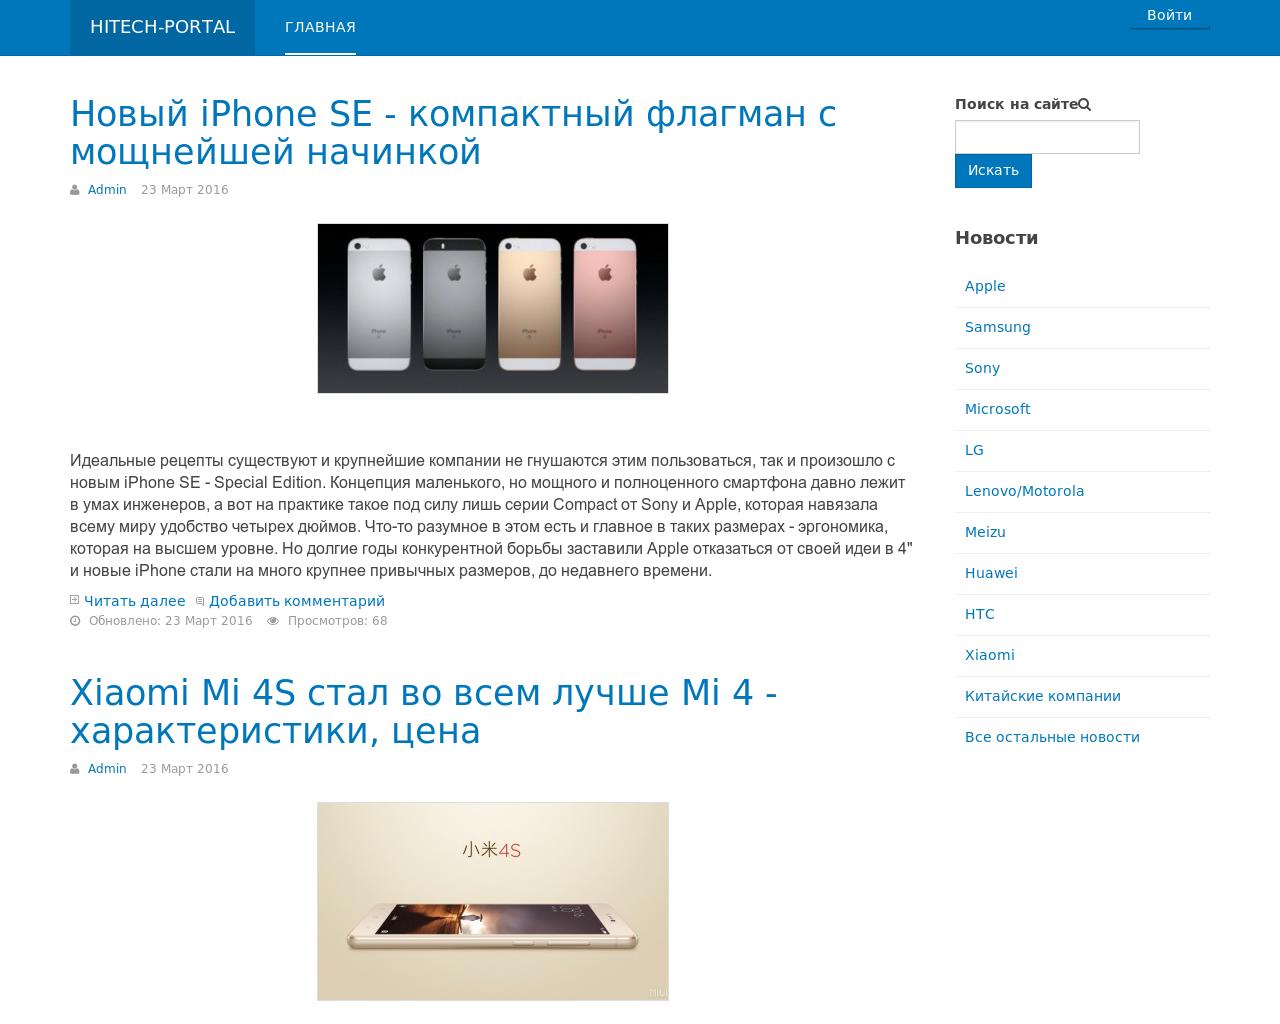 Изображение сайта hitech-portal.ru в разрешении 1280x1024